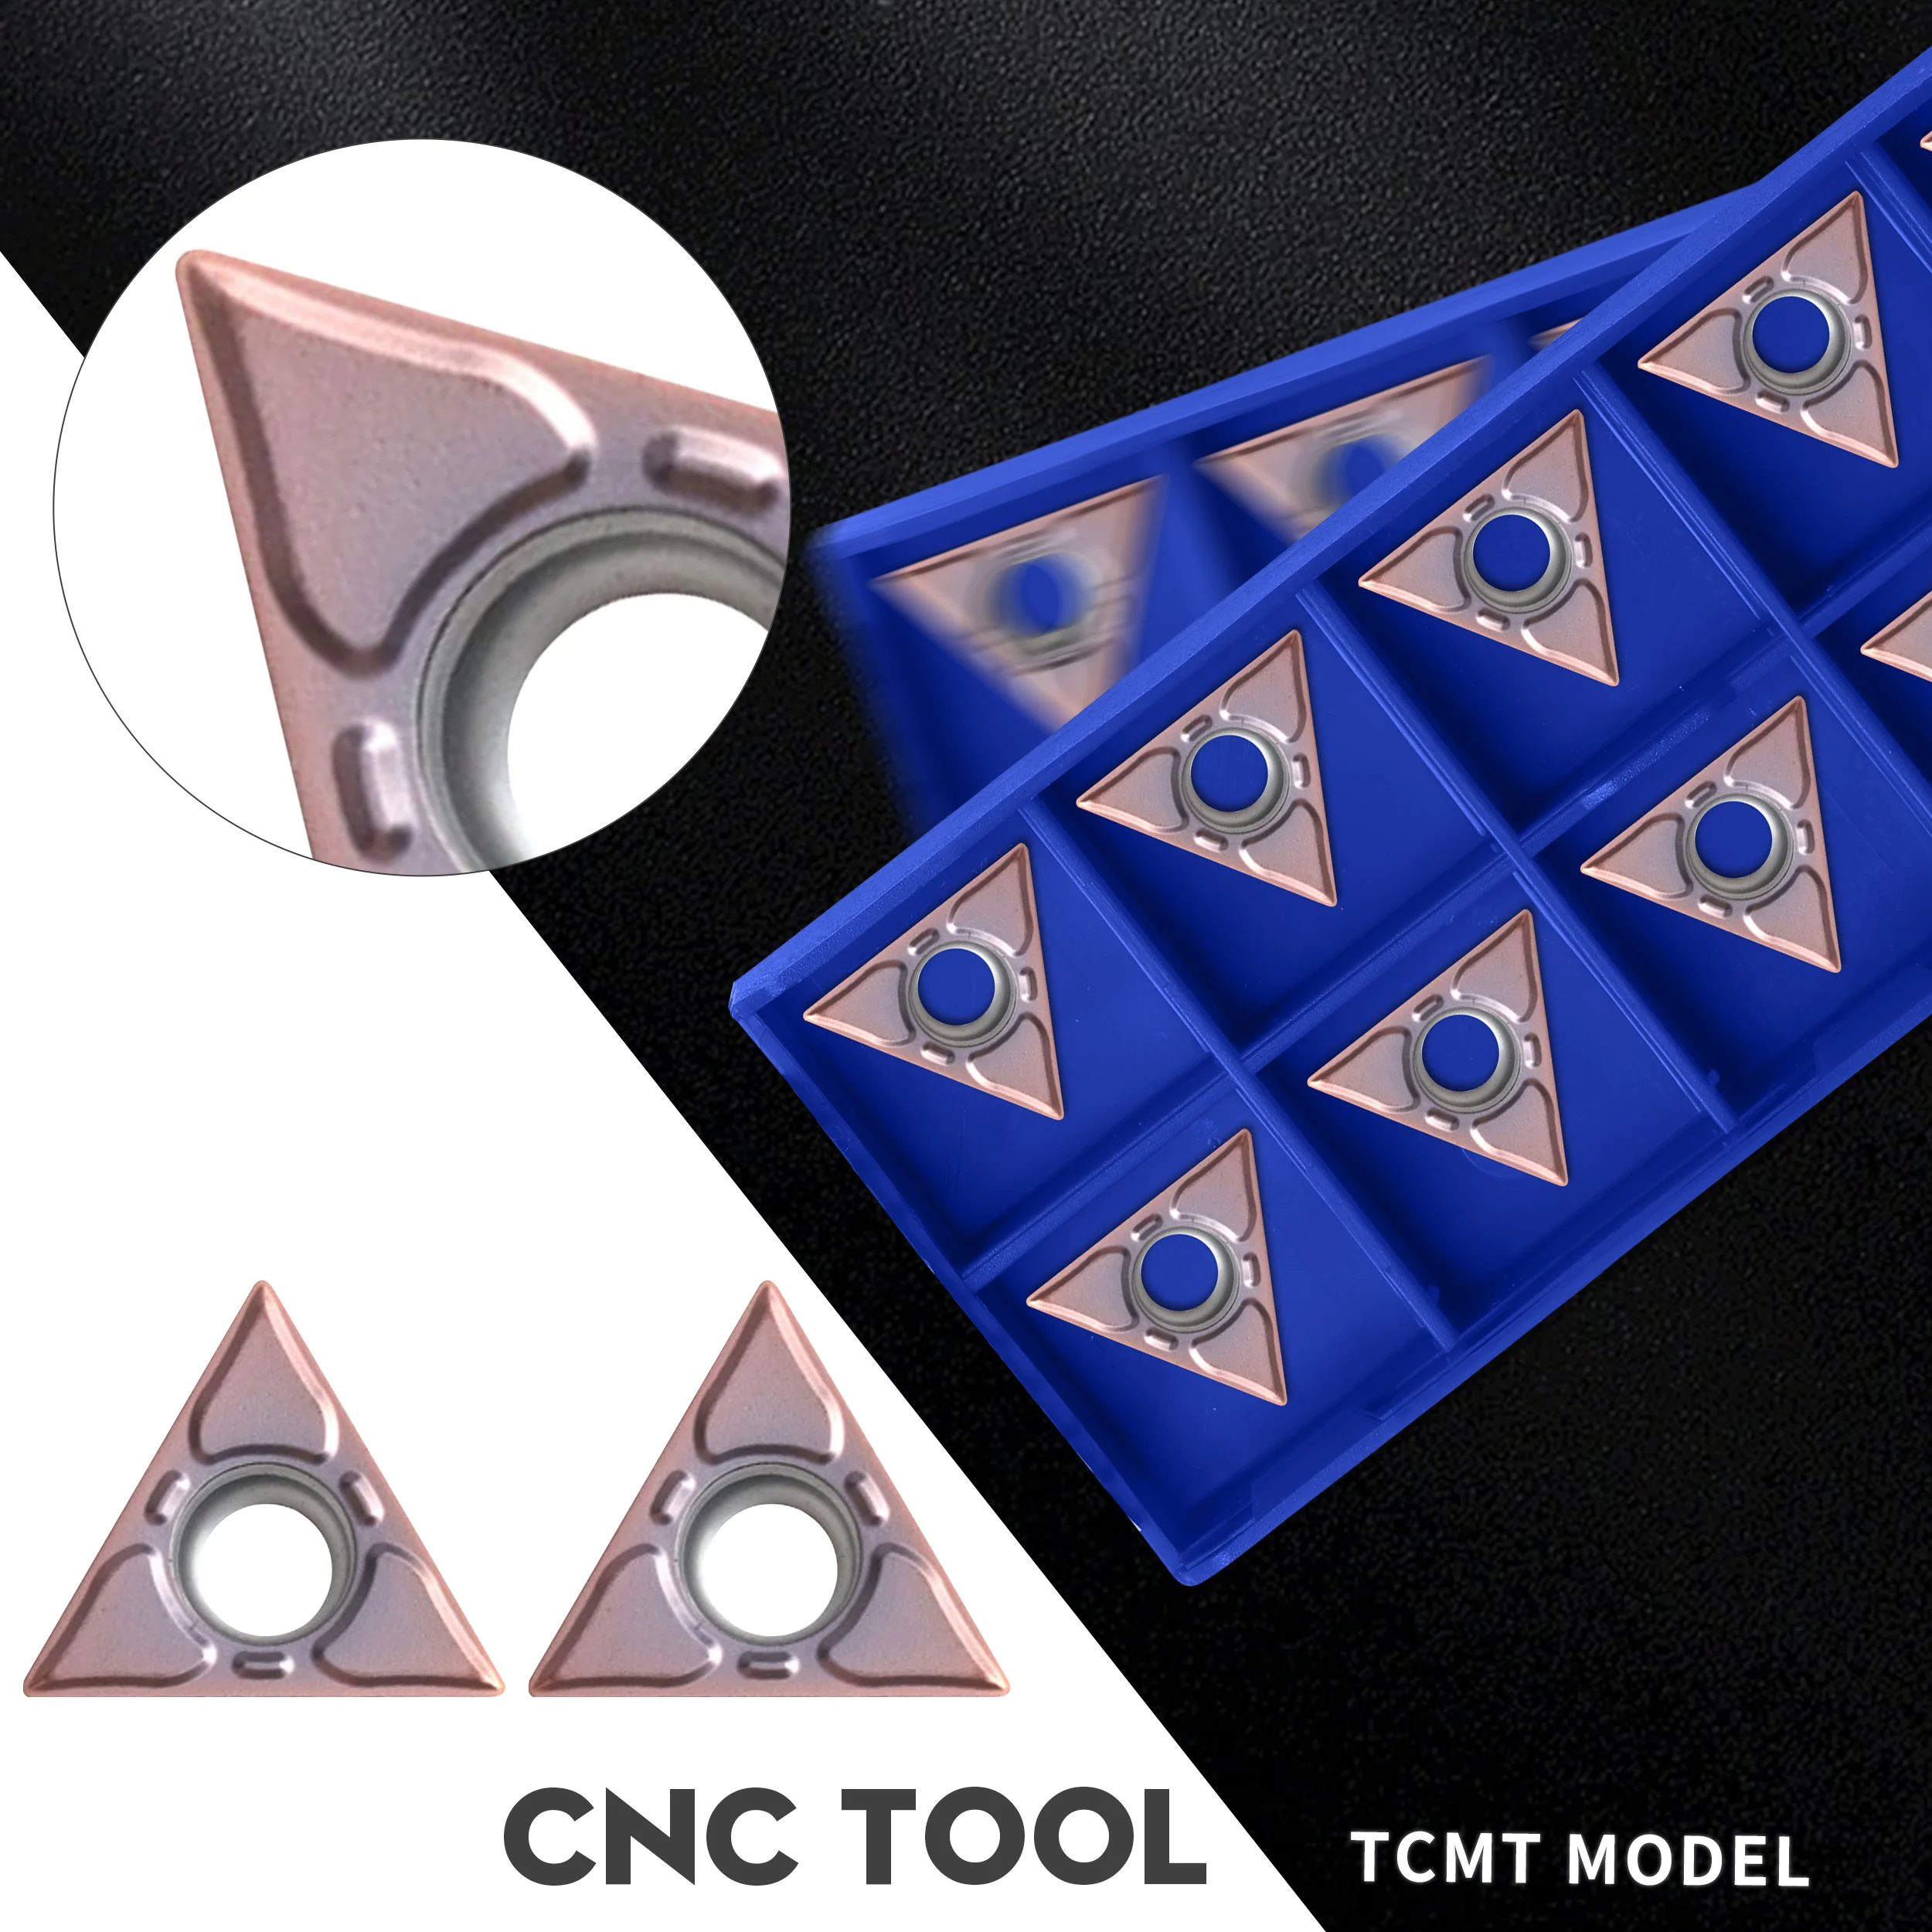 

TCMT16T304-EF TCMT16T308-EF YBG205 Carbide Blades TCMT16T304-EM TCMT16T304-EM YBG205 Lathe Turning Inserts, For Stainless Steel